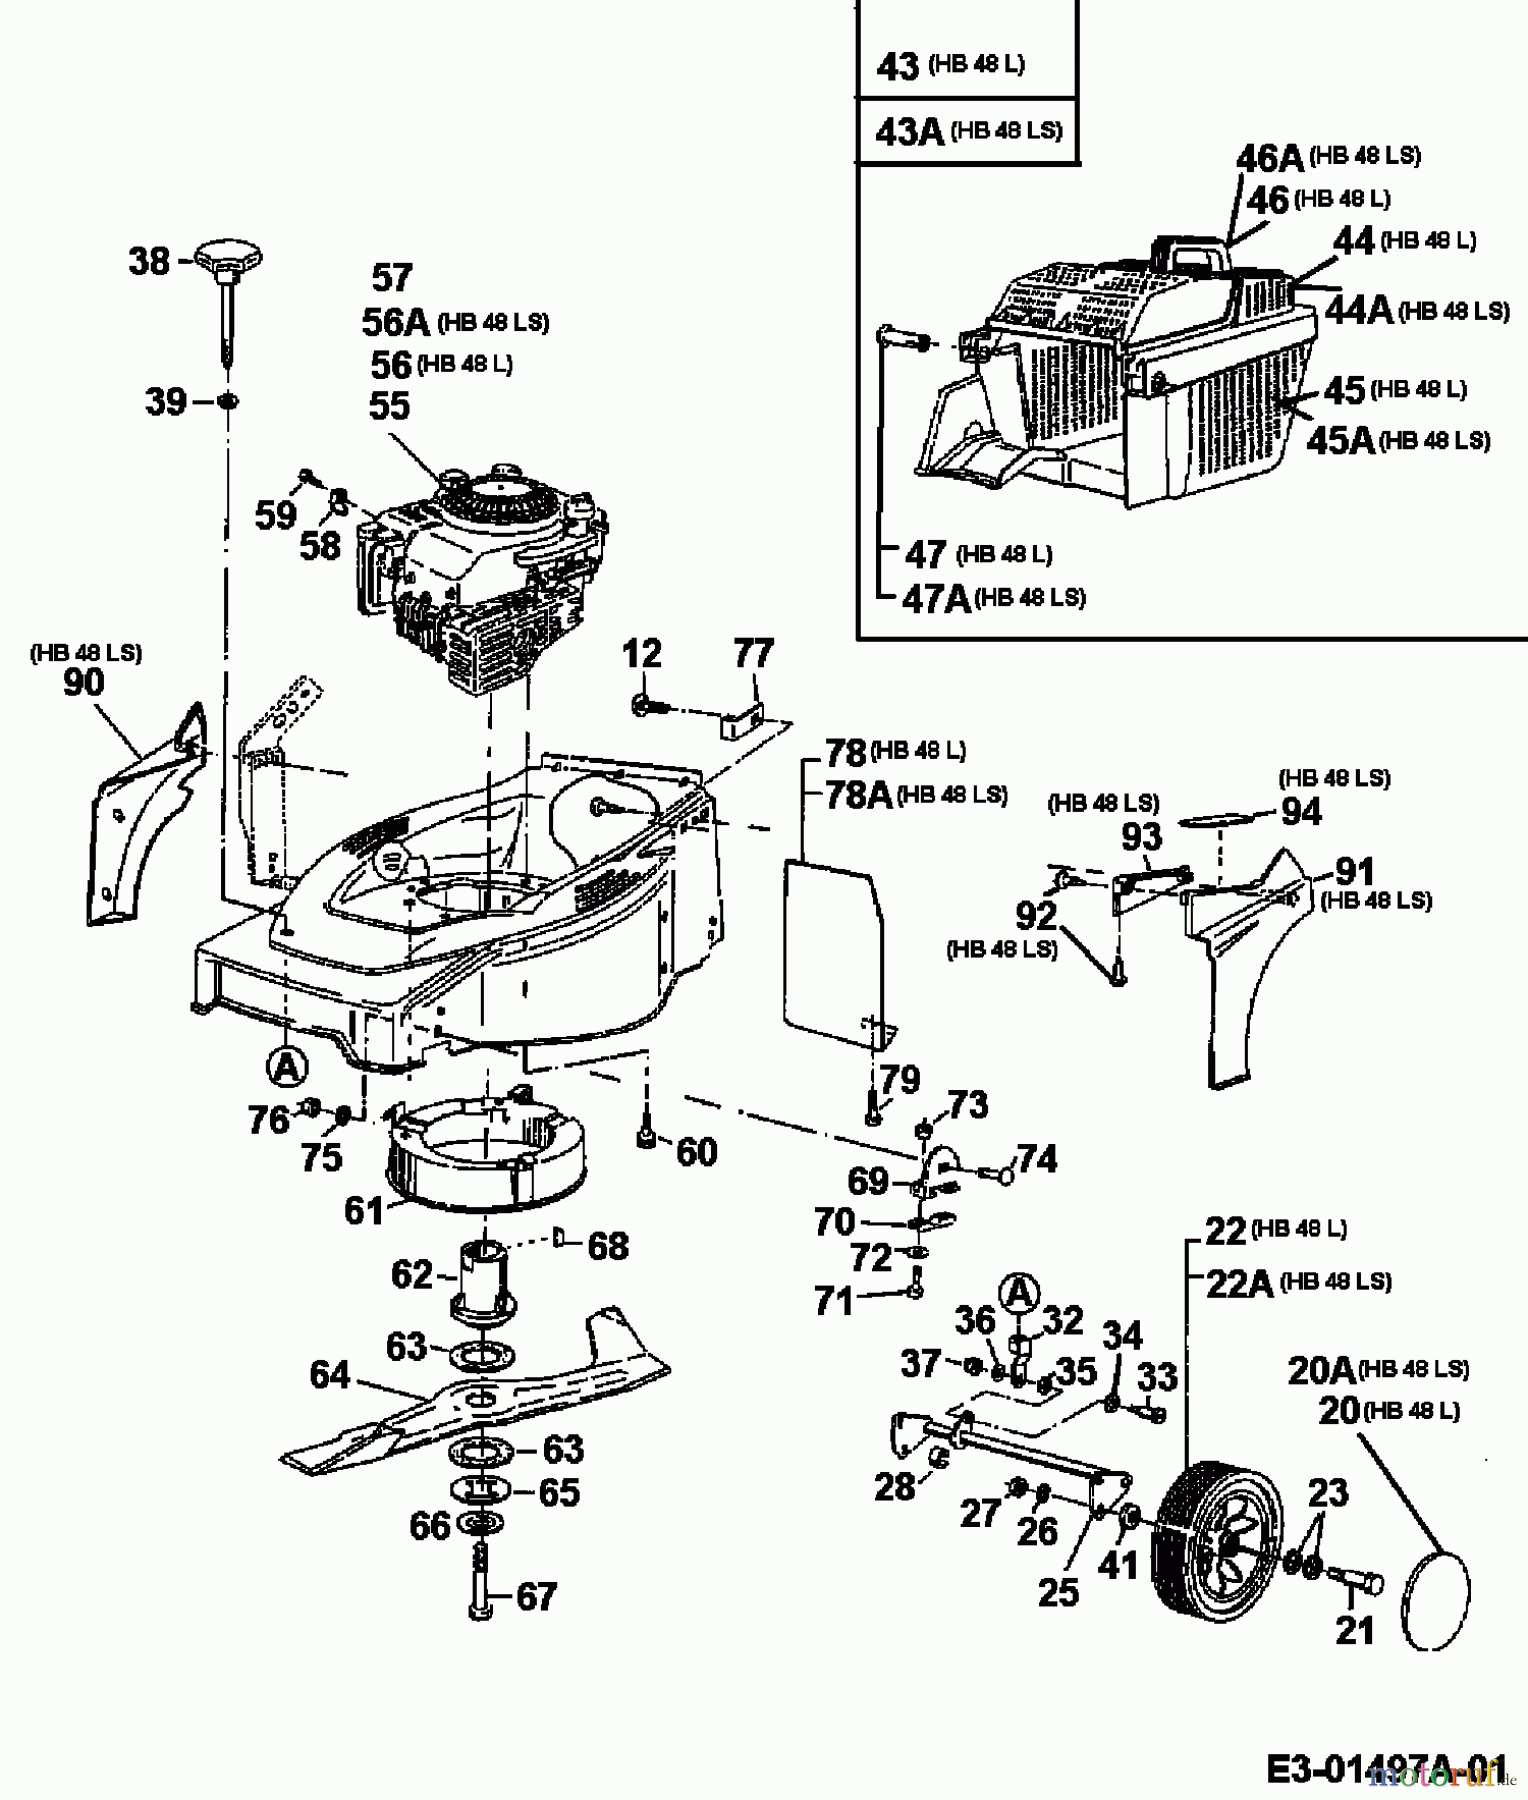  Gutbrod Motormäher HB 48 LS 11C-T58V690  (2000) Grundgerät